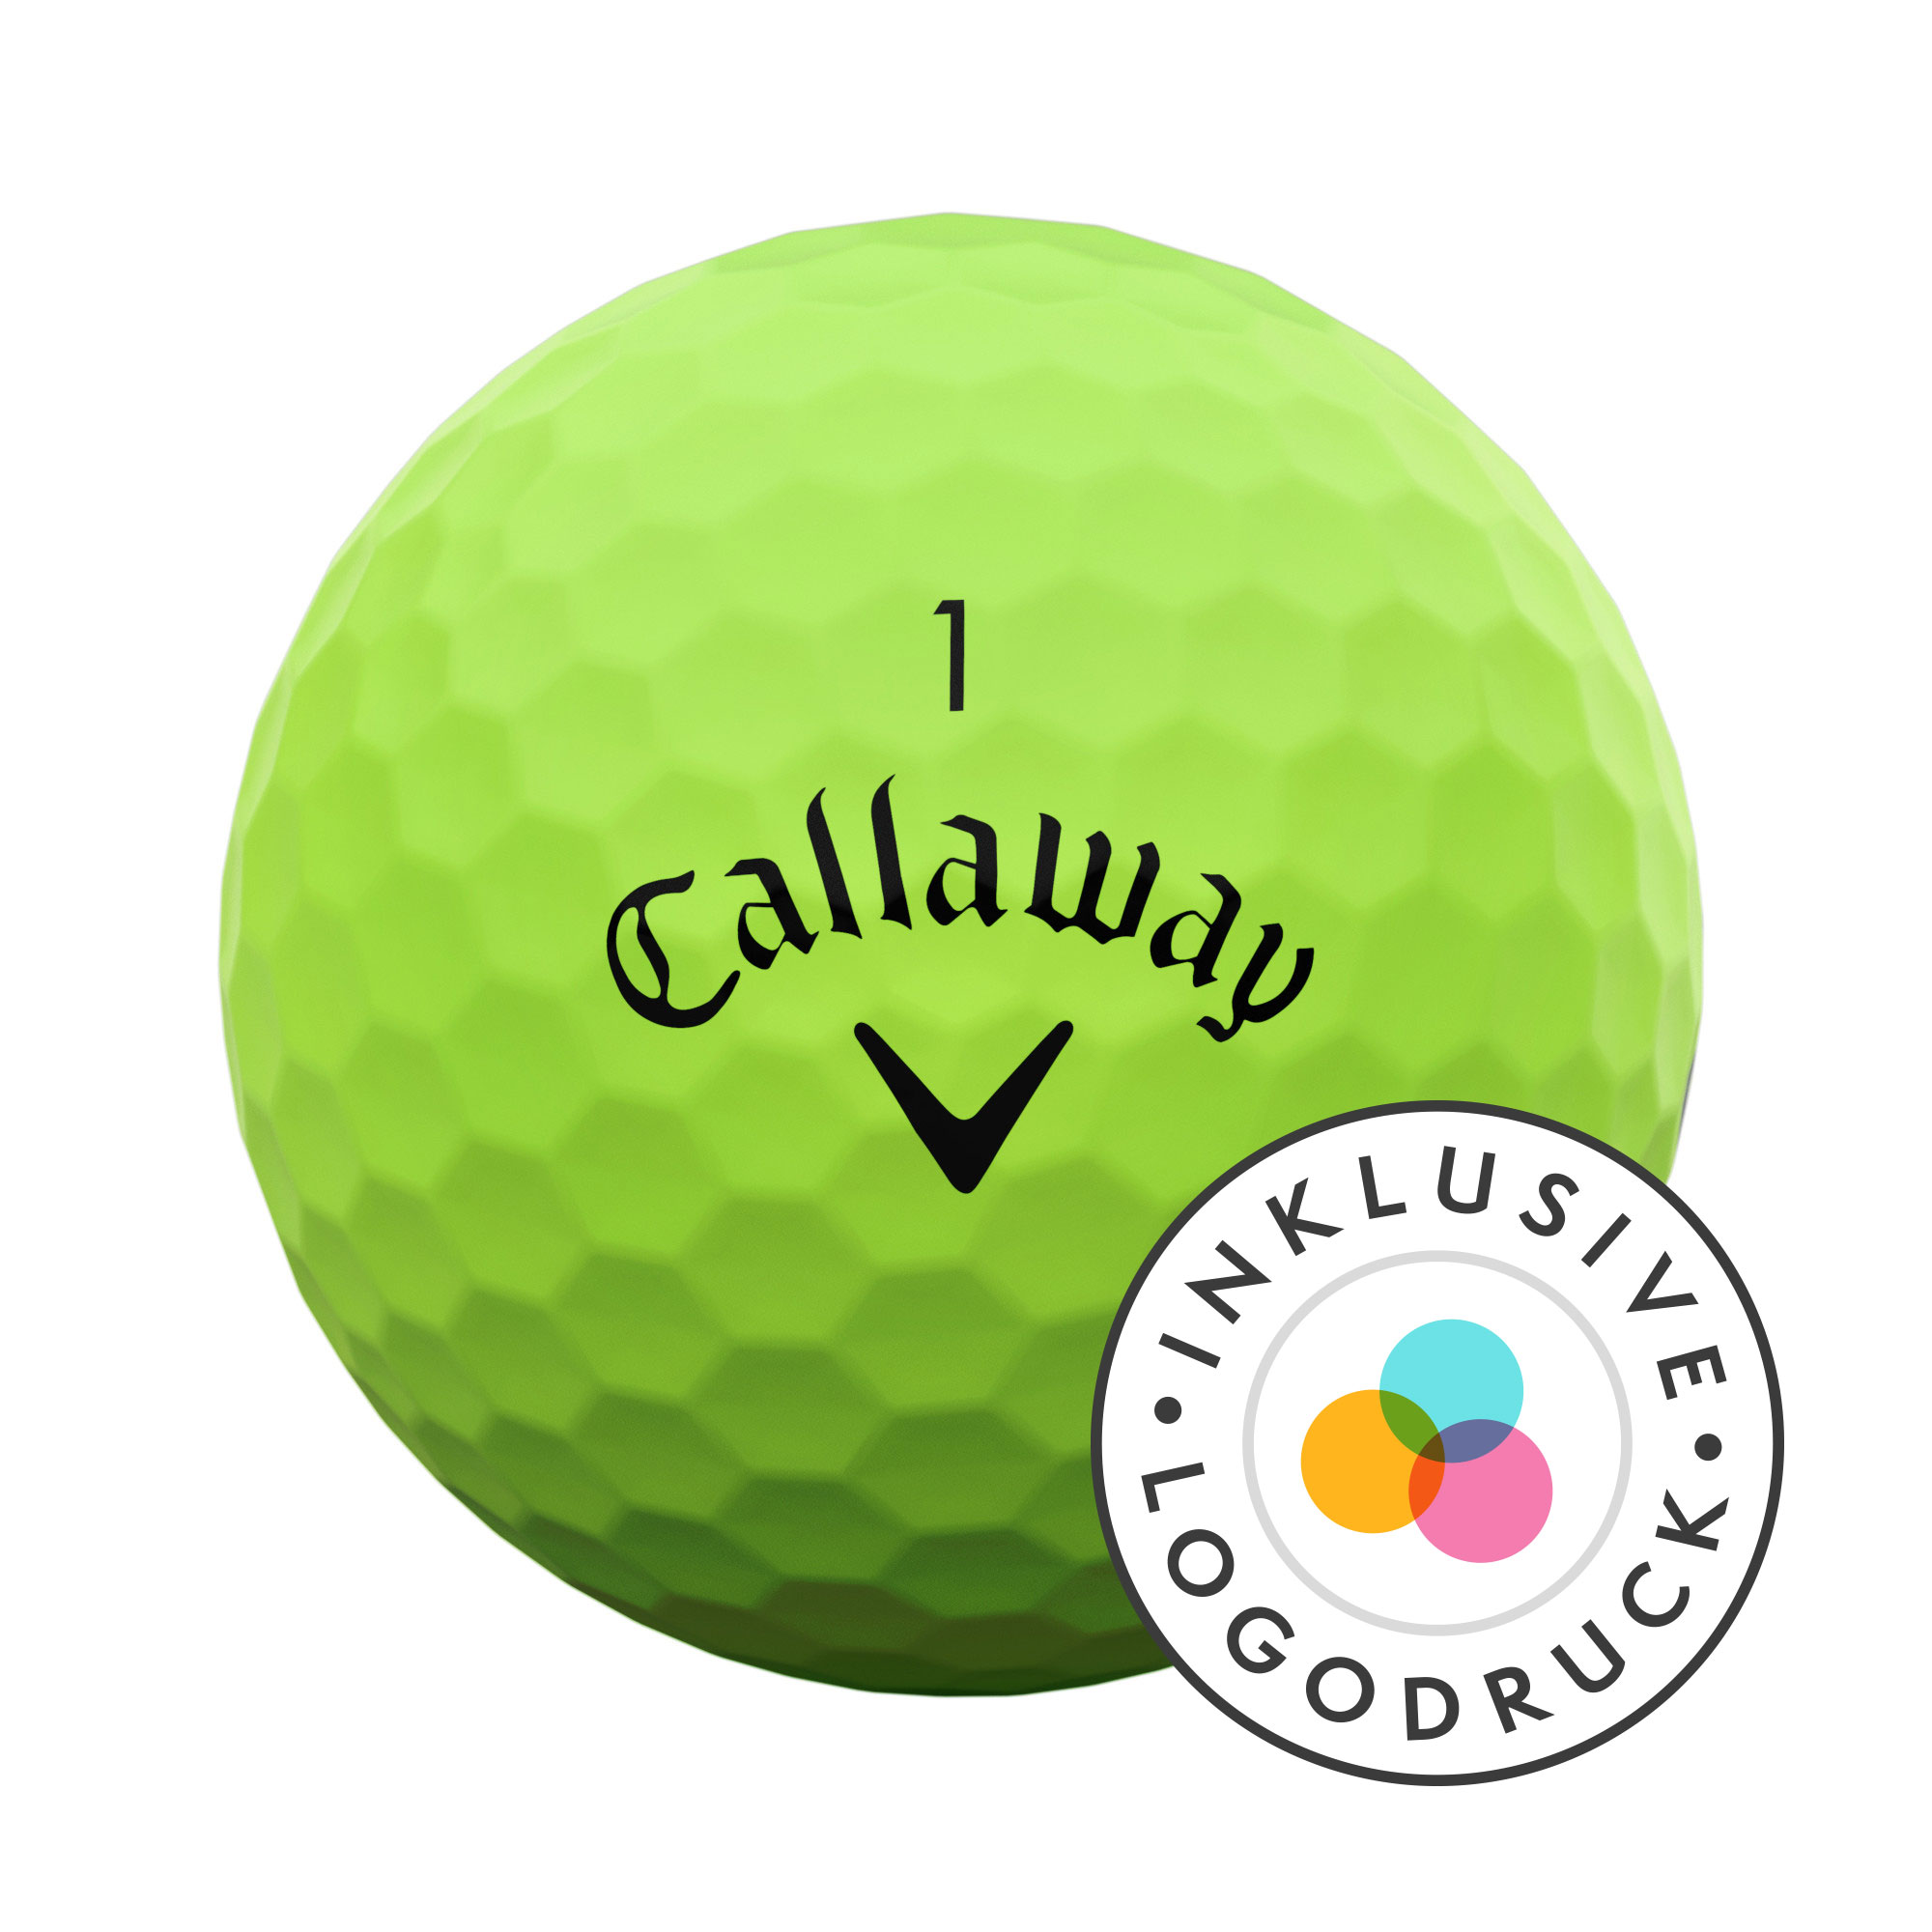 Callaway SuperSoft Golfbälle bedruckt, matt grün (VPE à 12 Bälle)